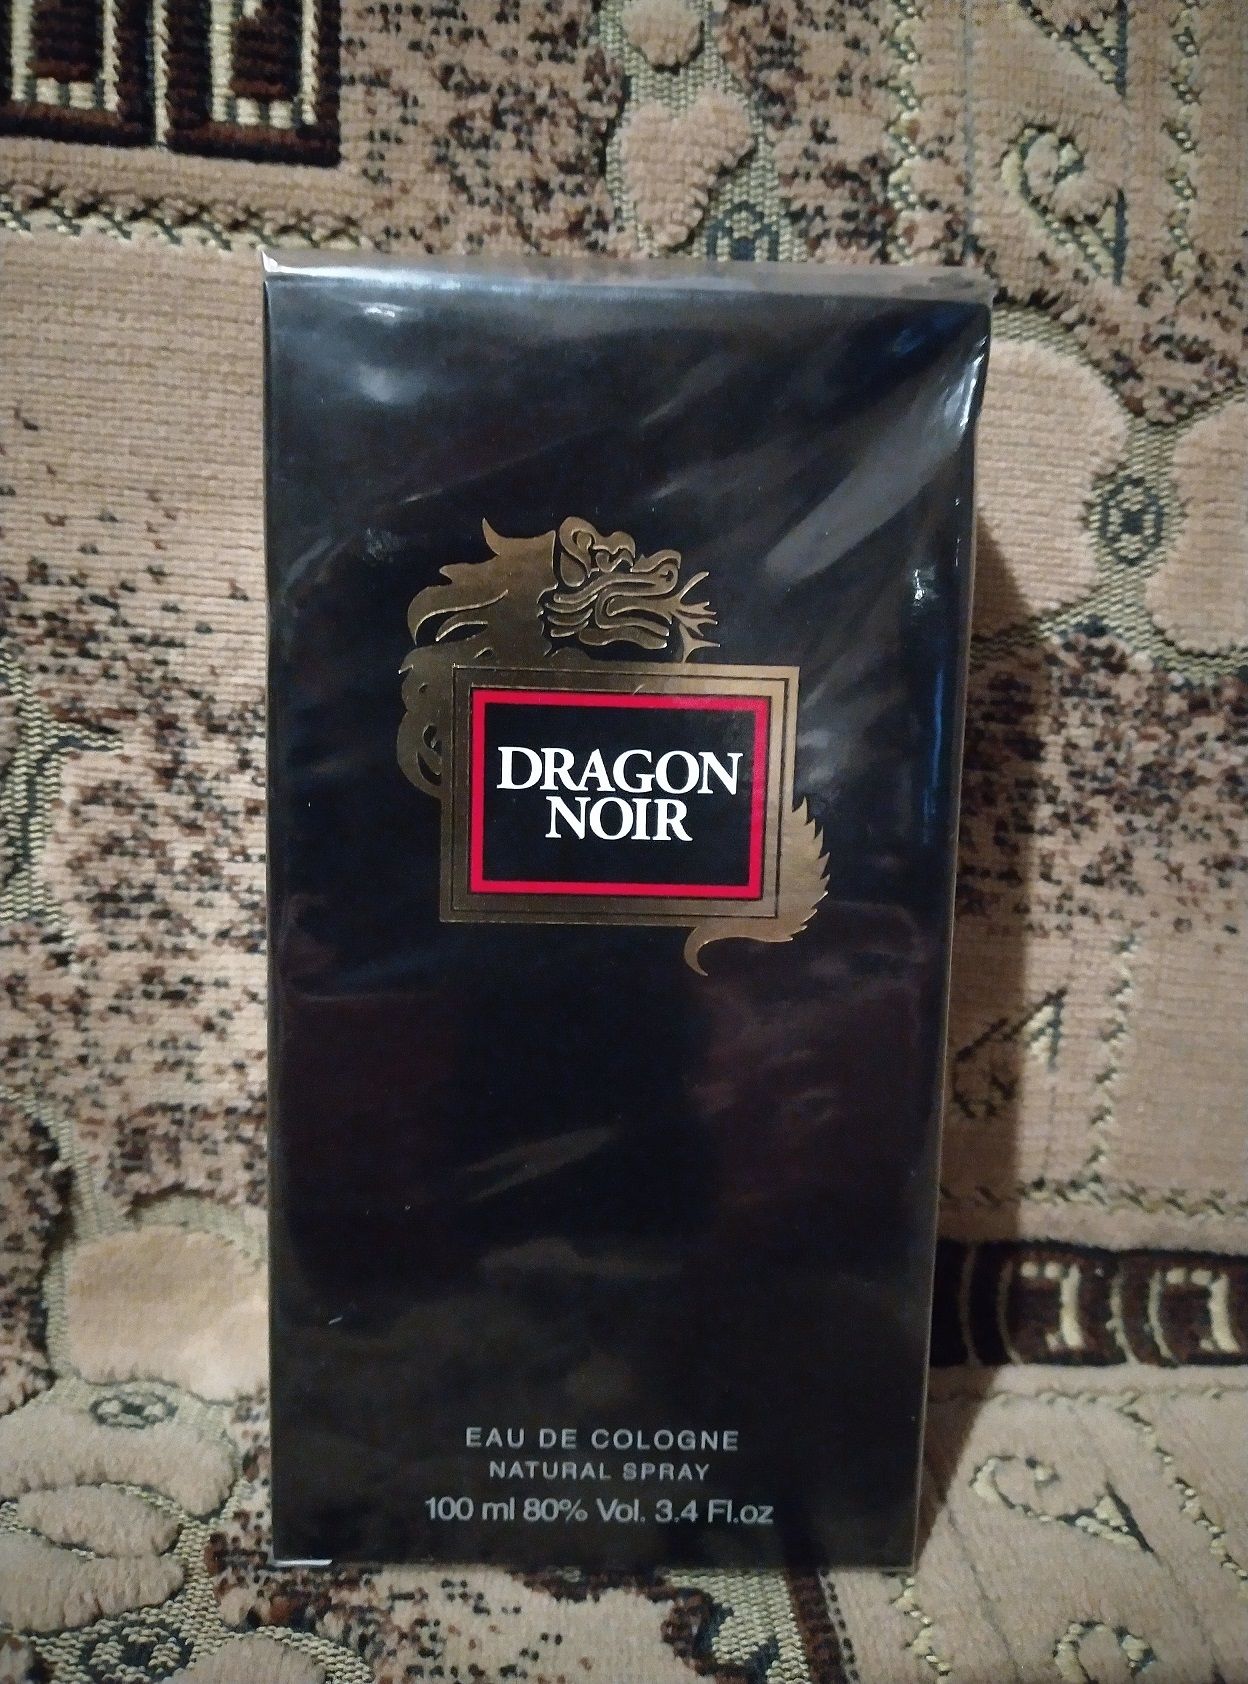 Dragon noir. Мужской одеколон Dragon Noir. Мужской Парфюм с драконом. Кровь дракона Парфюм. Dragon Parfums одеколон Dragon Noir обзоры.